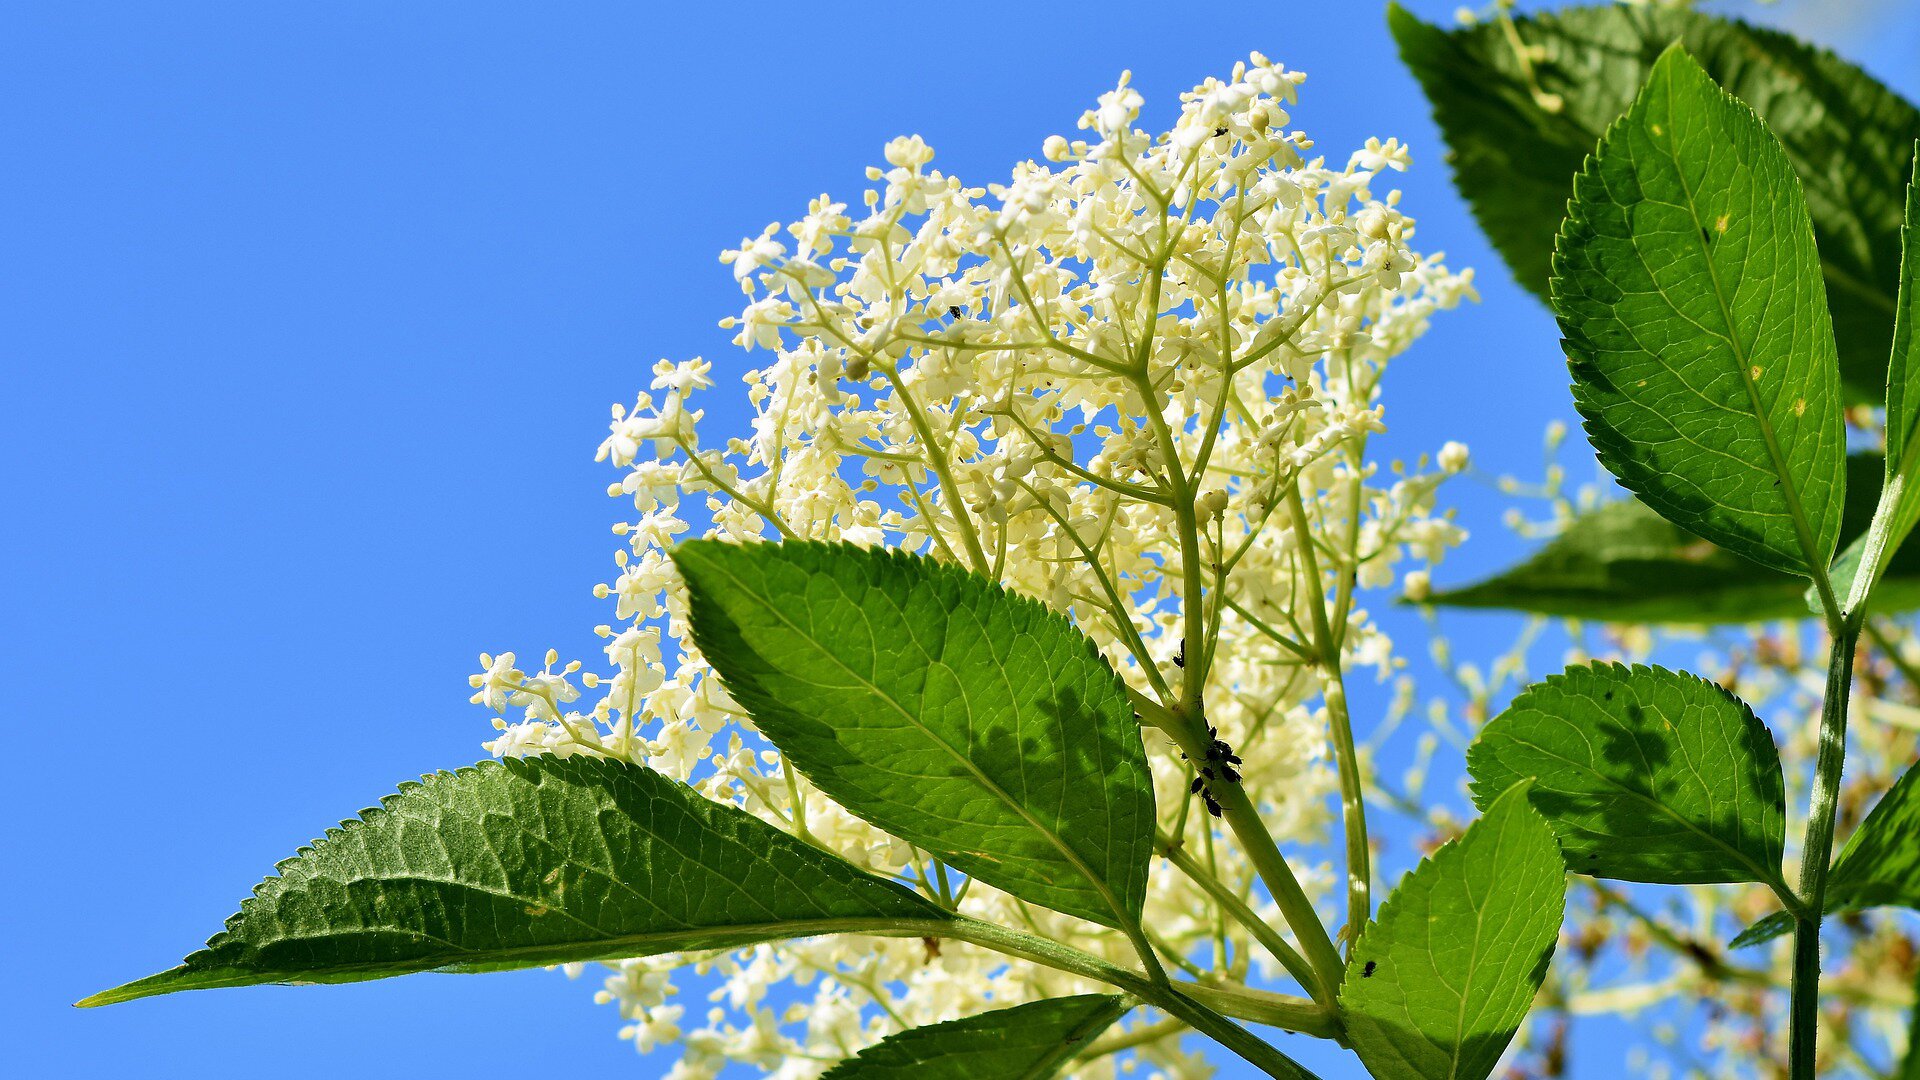 Zdjęcie przedstawia baldachim kwiatu czarnego bzu na niebieskim tle. Widoczne są białe, małe kwiatki zebrane w promienisty baldachim z gałązkami z jajowato‑eliptycznymi i ostro zakończonymi zielonymi listkami.